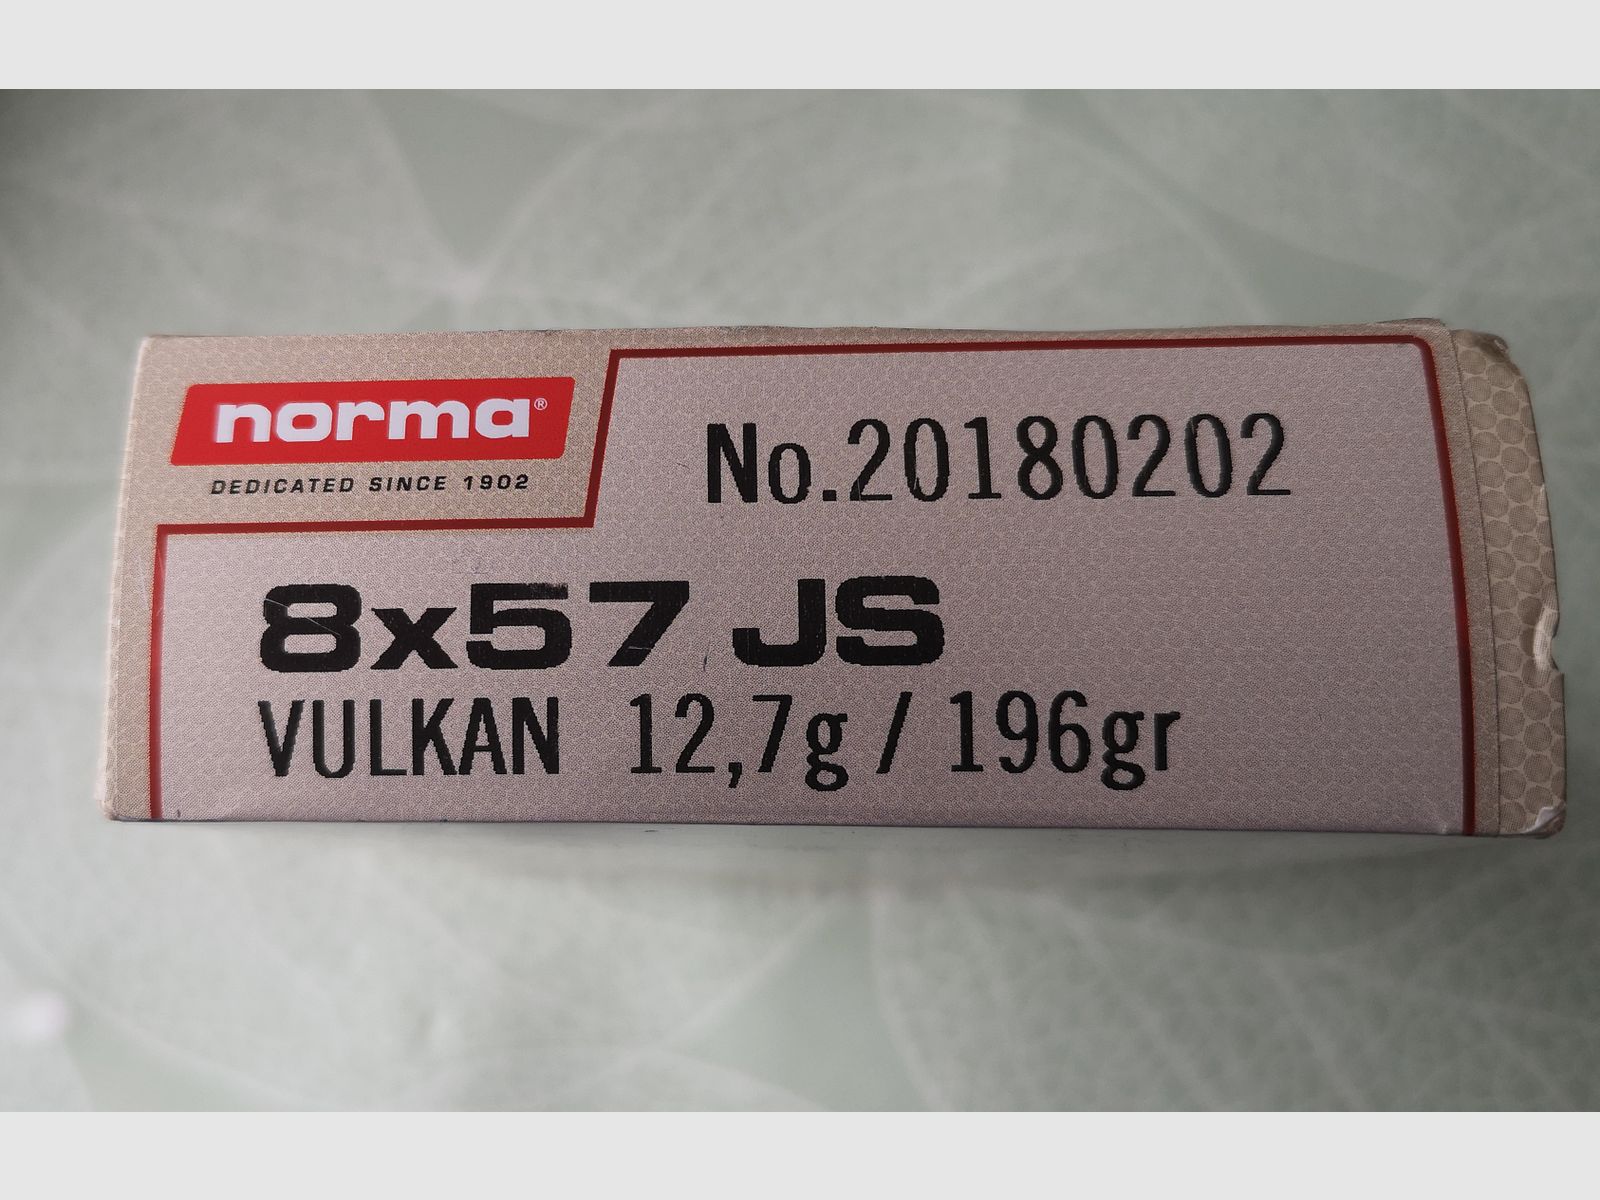 8x57 IS Norma Vulkan 12,7g